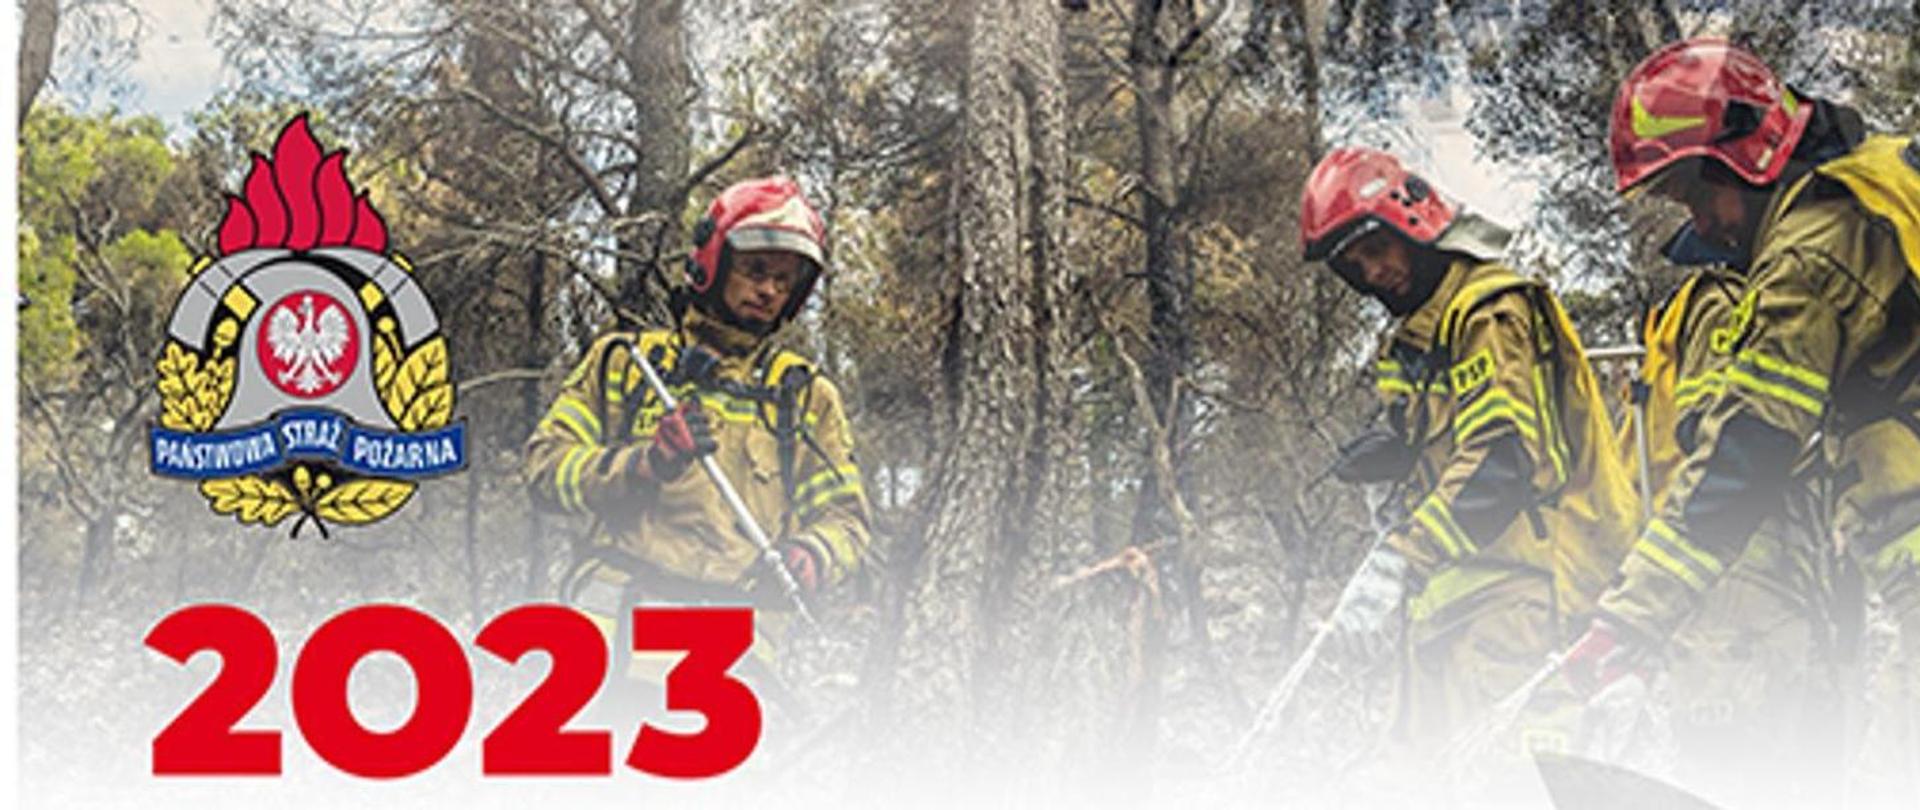 Zdjęcie przedstawia okładkę kalendarza strażackiego - trzech strażaków, logo straży pożarnej oraz rok 2023